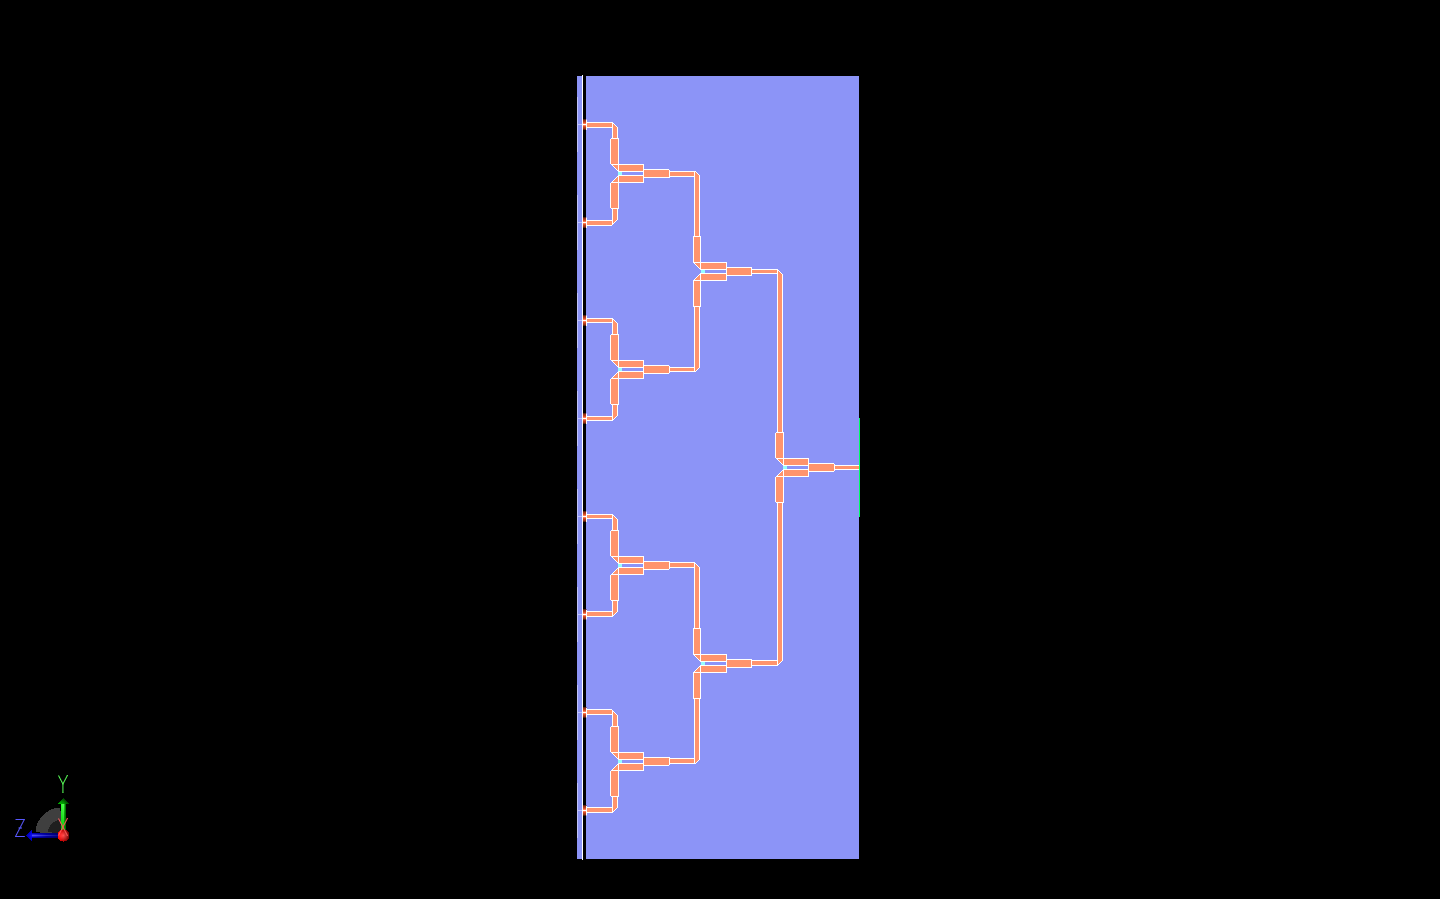 Figura 9: Vista lateral del divisor de potencia Wilkinson que muestra claramente las tres etapas de división de la señal.